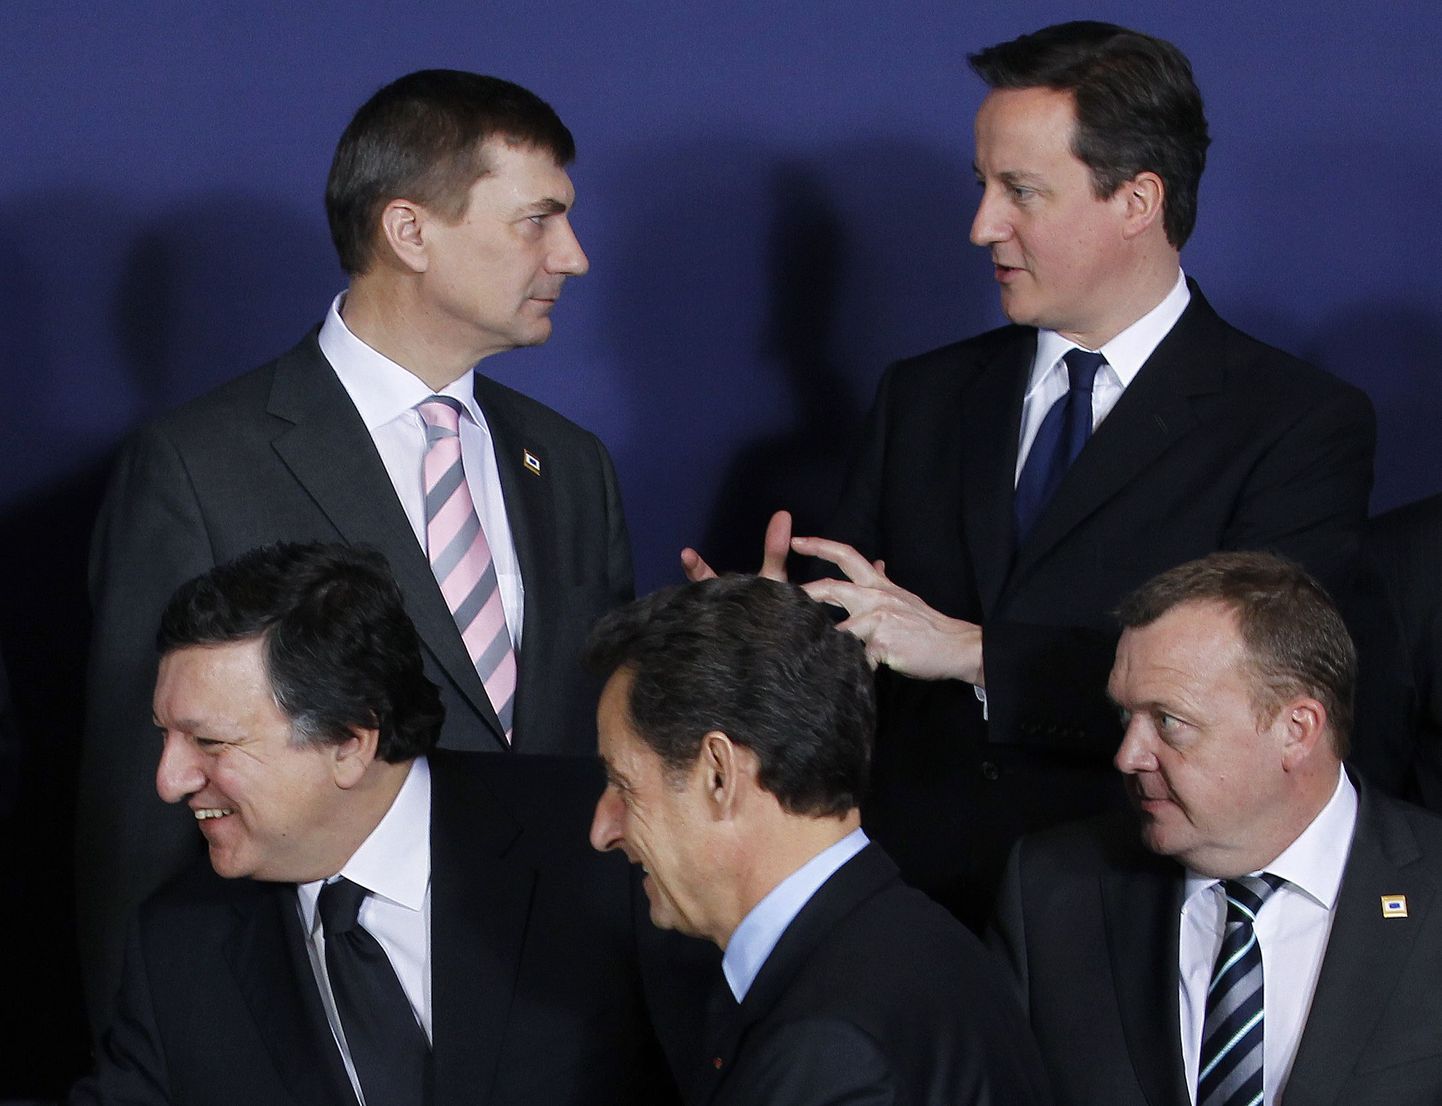 Премьер-министр Эстонии Андрус Ансип (слева в верхем ряду) беседует с британским премьером Дэвидом Кэмероном во время саммита ЕС в Брюсселе.